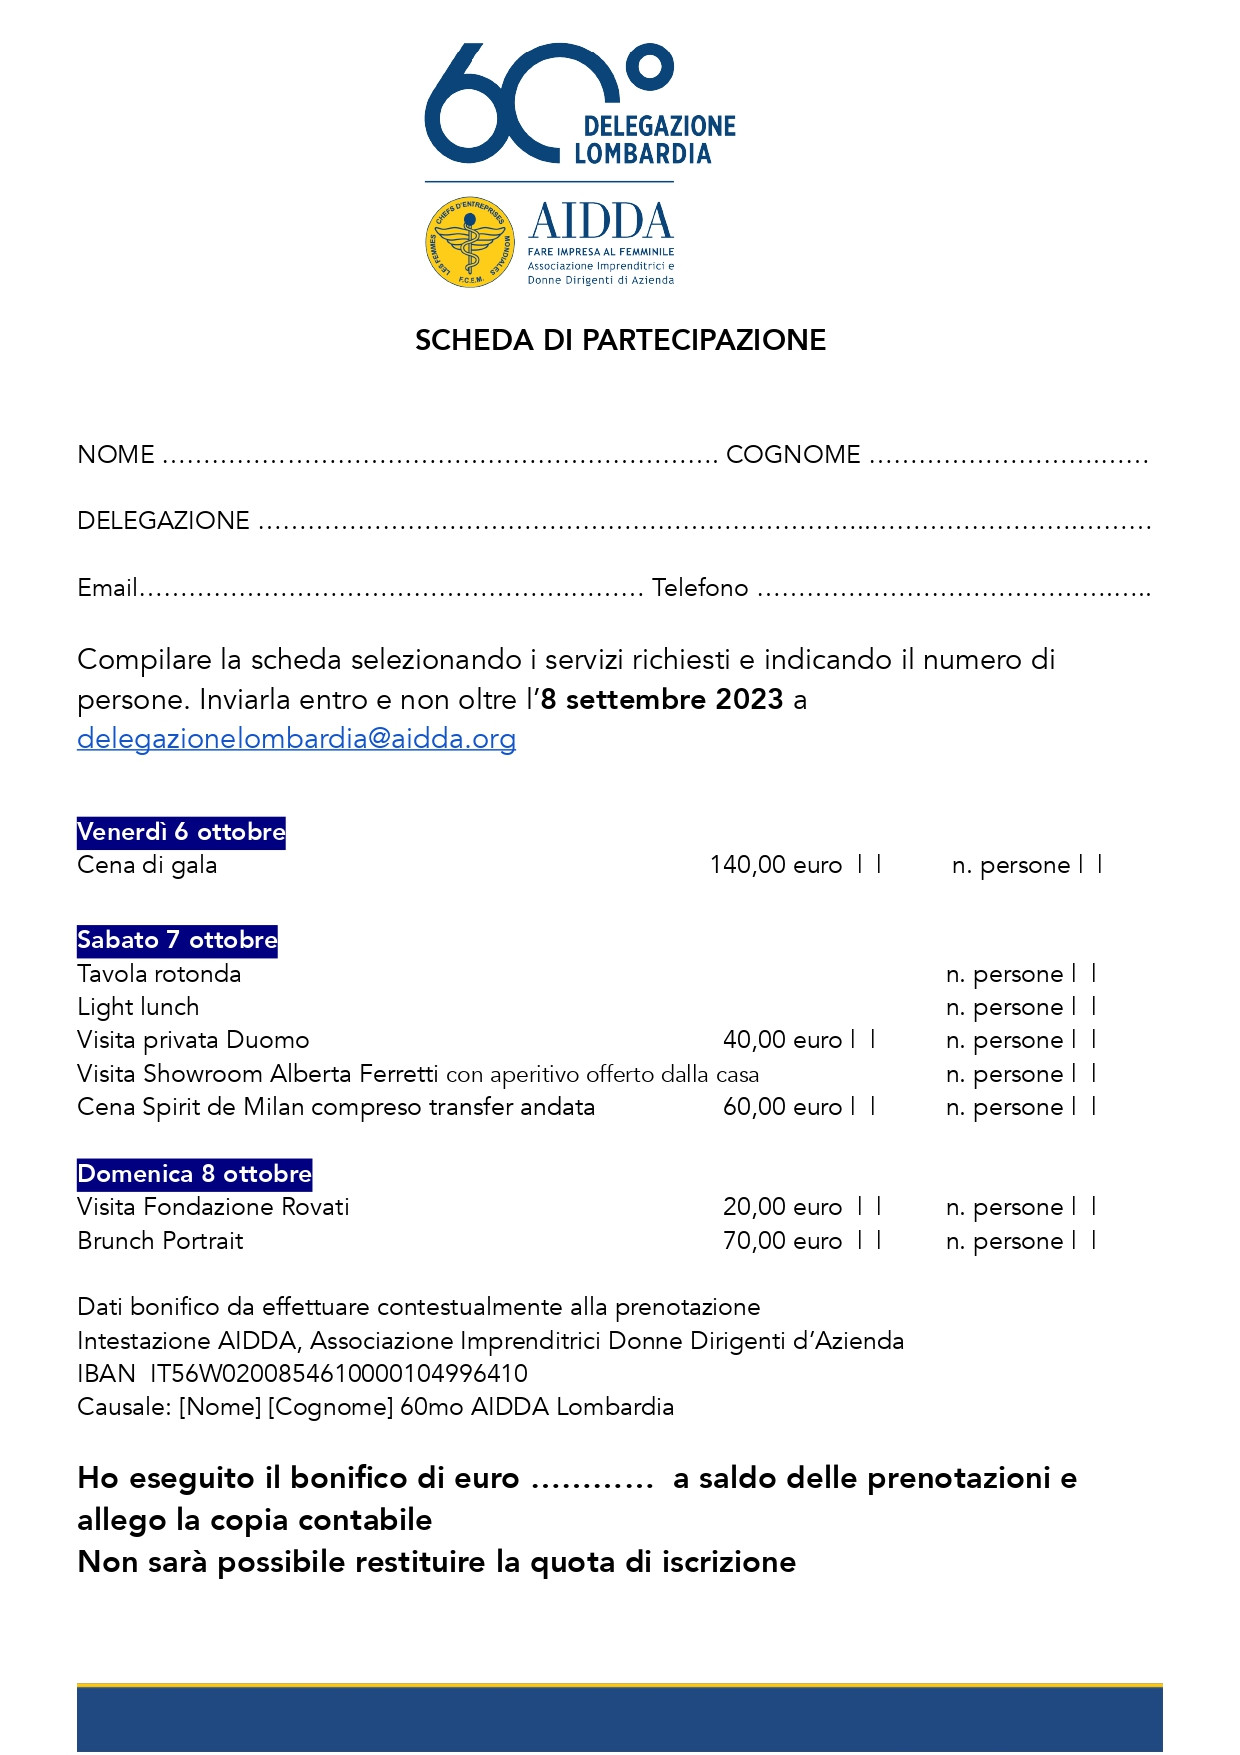 60 ANNIVERSARIO AIDDA LOMBARDIA_-6-7-8 ottobre 2023_Programma_page-0004.jpg